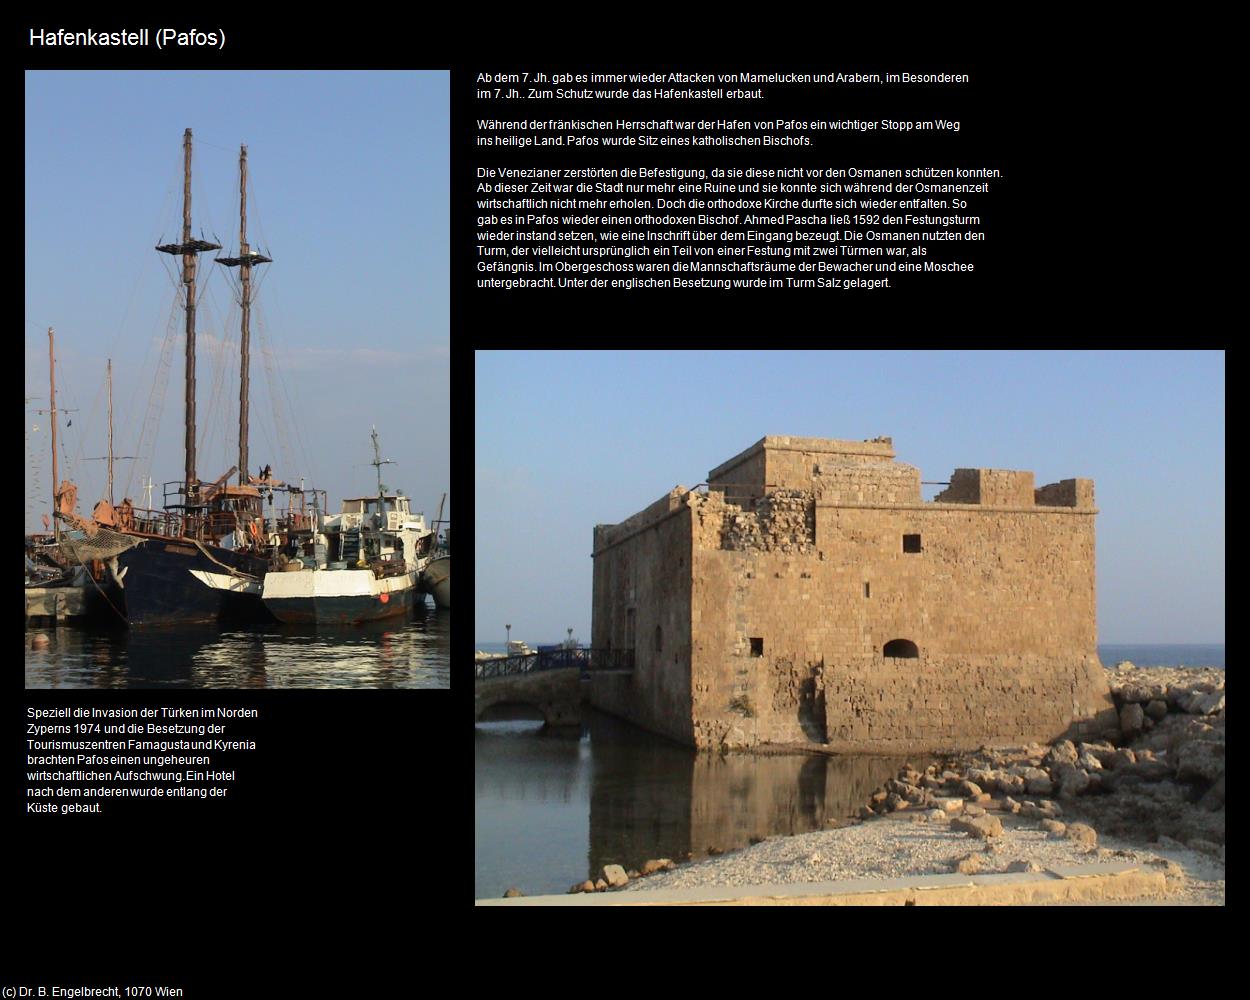 Hafenkastell (Pafos/Paphos) in ZYPERN-Insel der Aphrodite